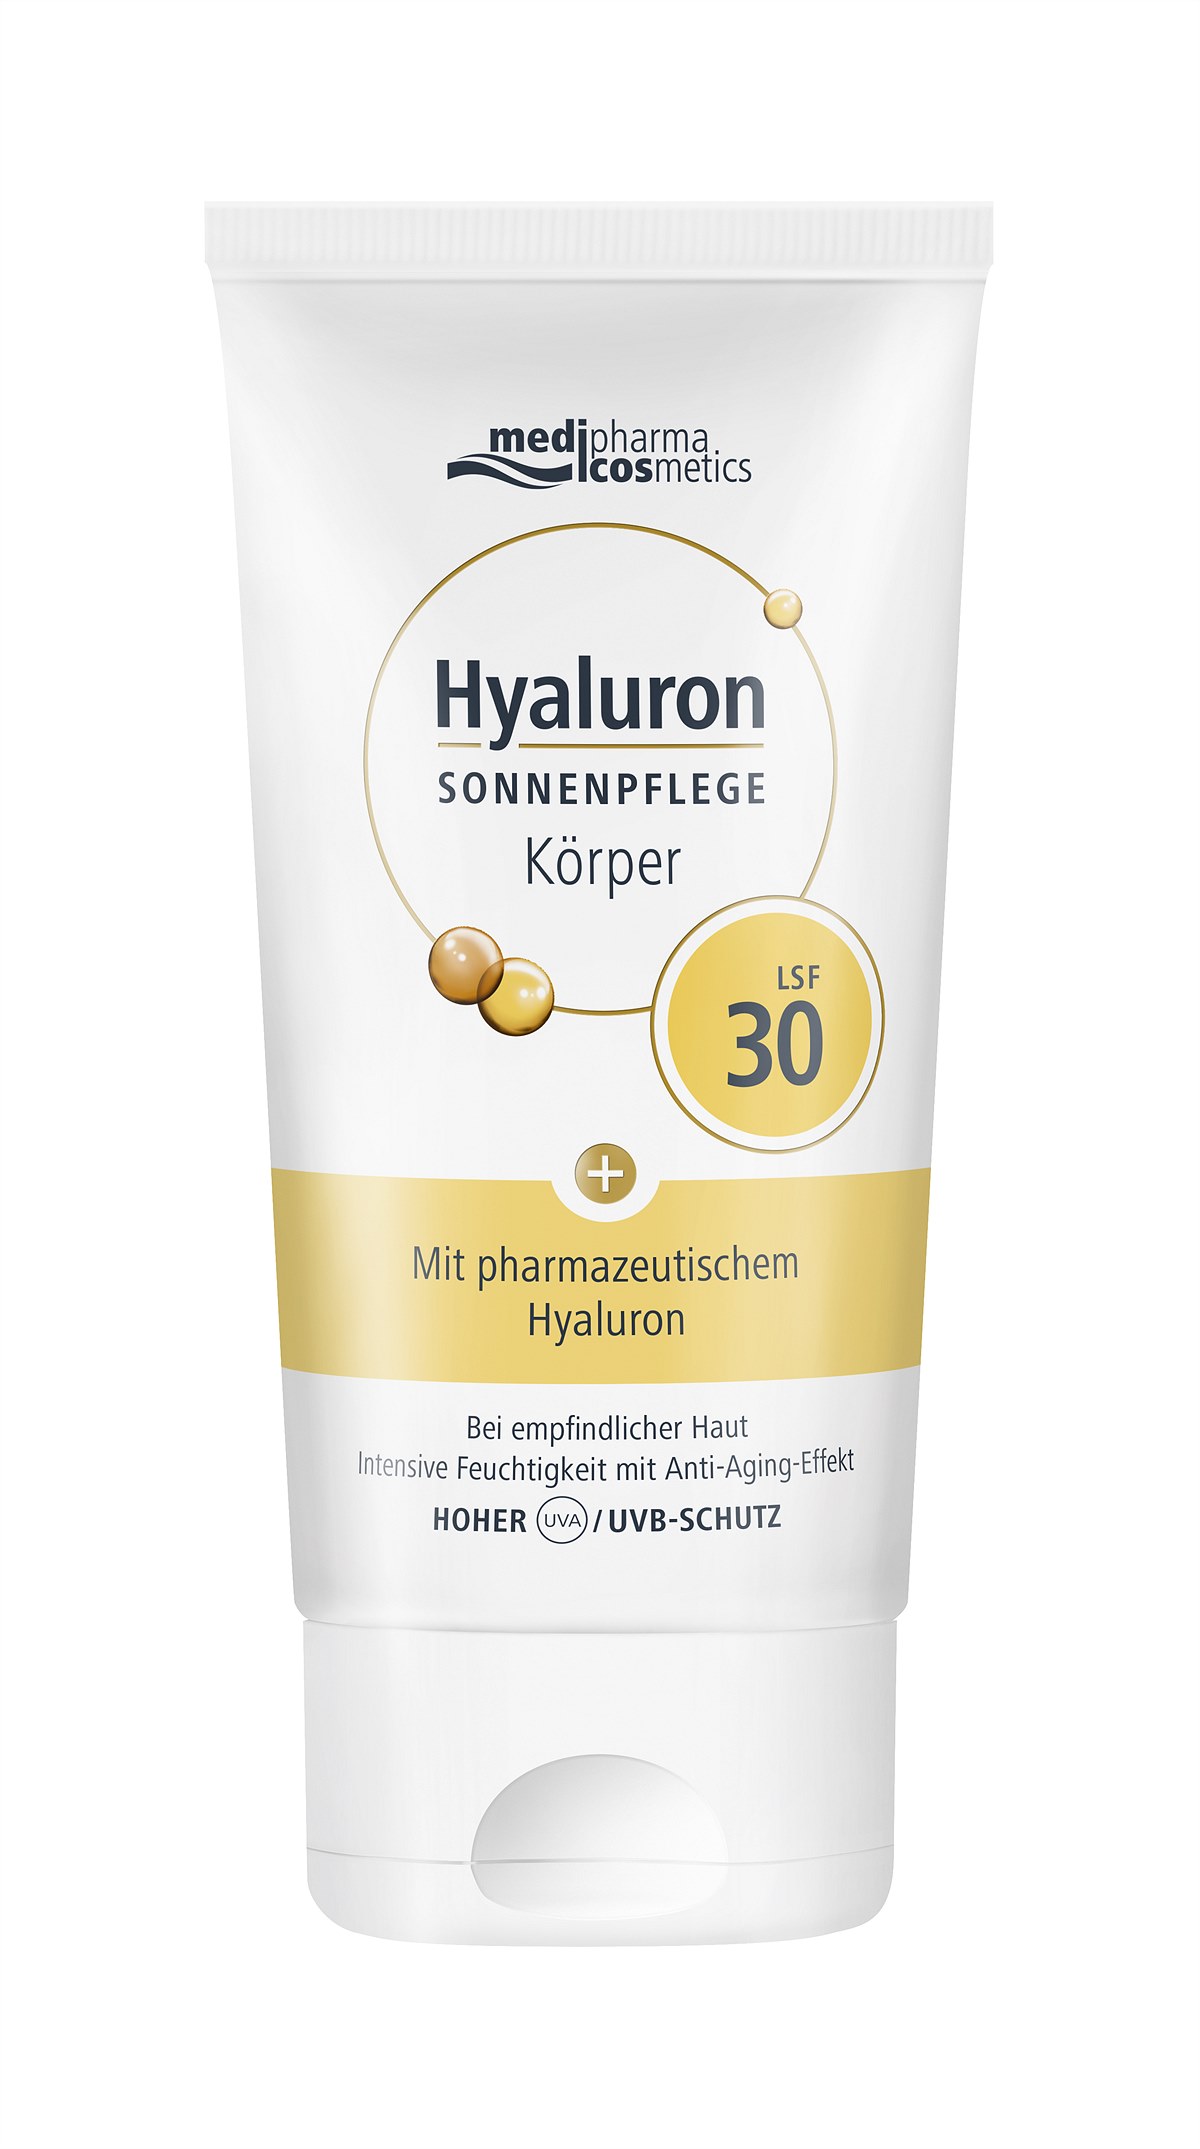 medipharma cosmetics -  Hyaluron SONNENPFLEGE Körper LSF 30